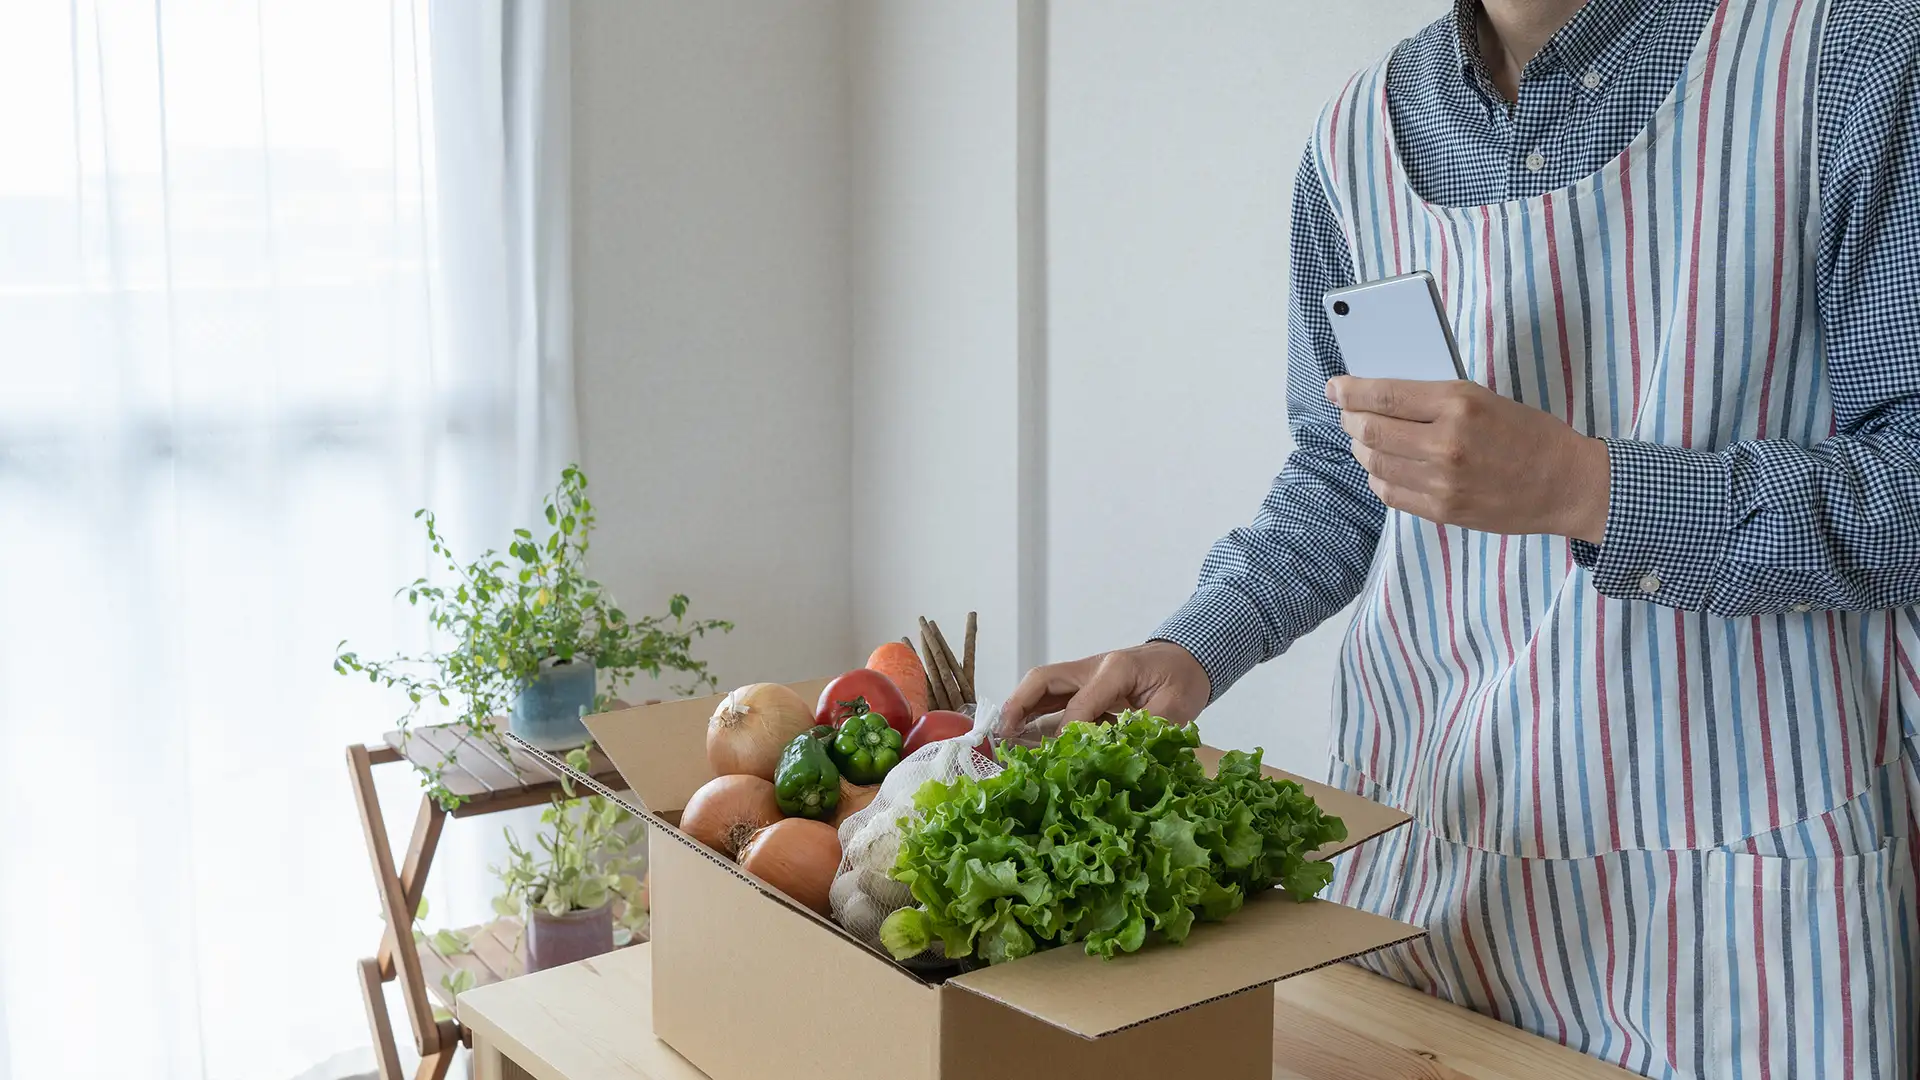 Gemüse in einem Karton, Mann mit Handy in der Hand packt das Gemüse in den Karton.